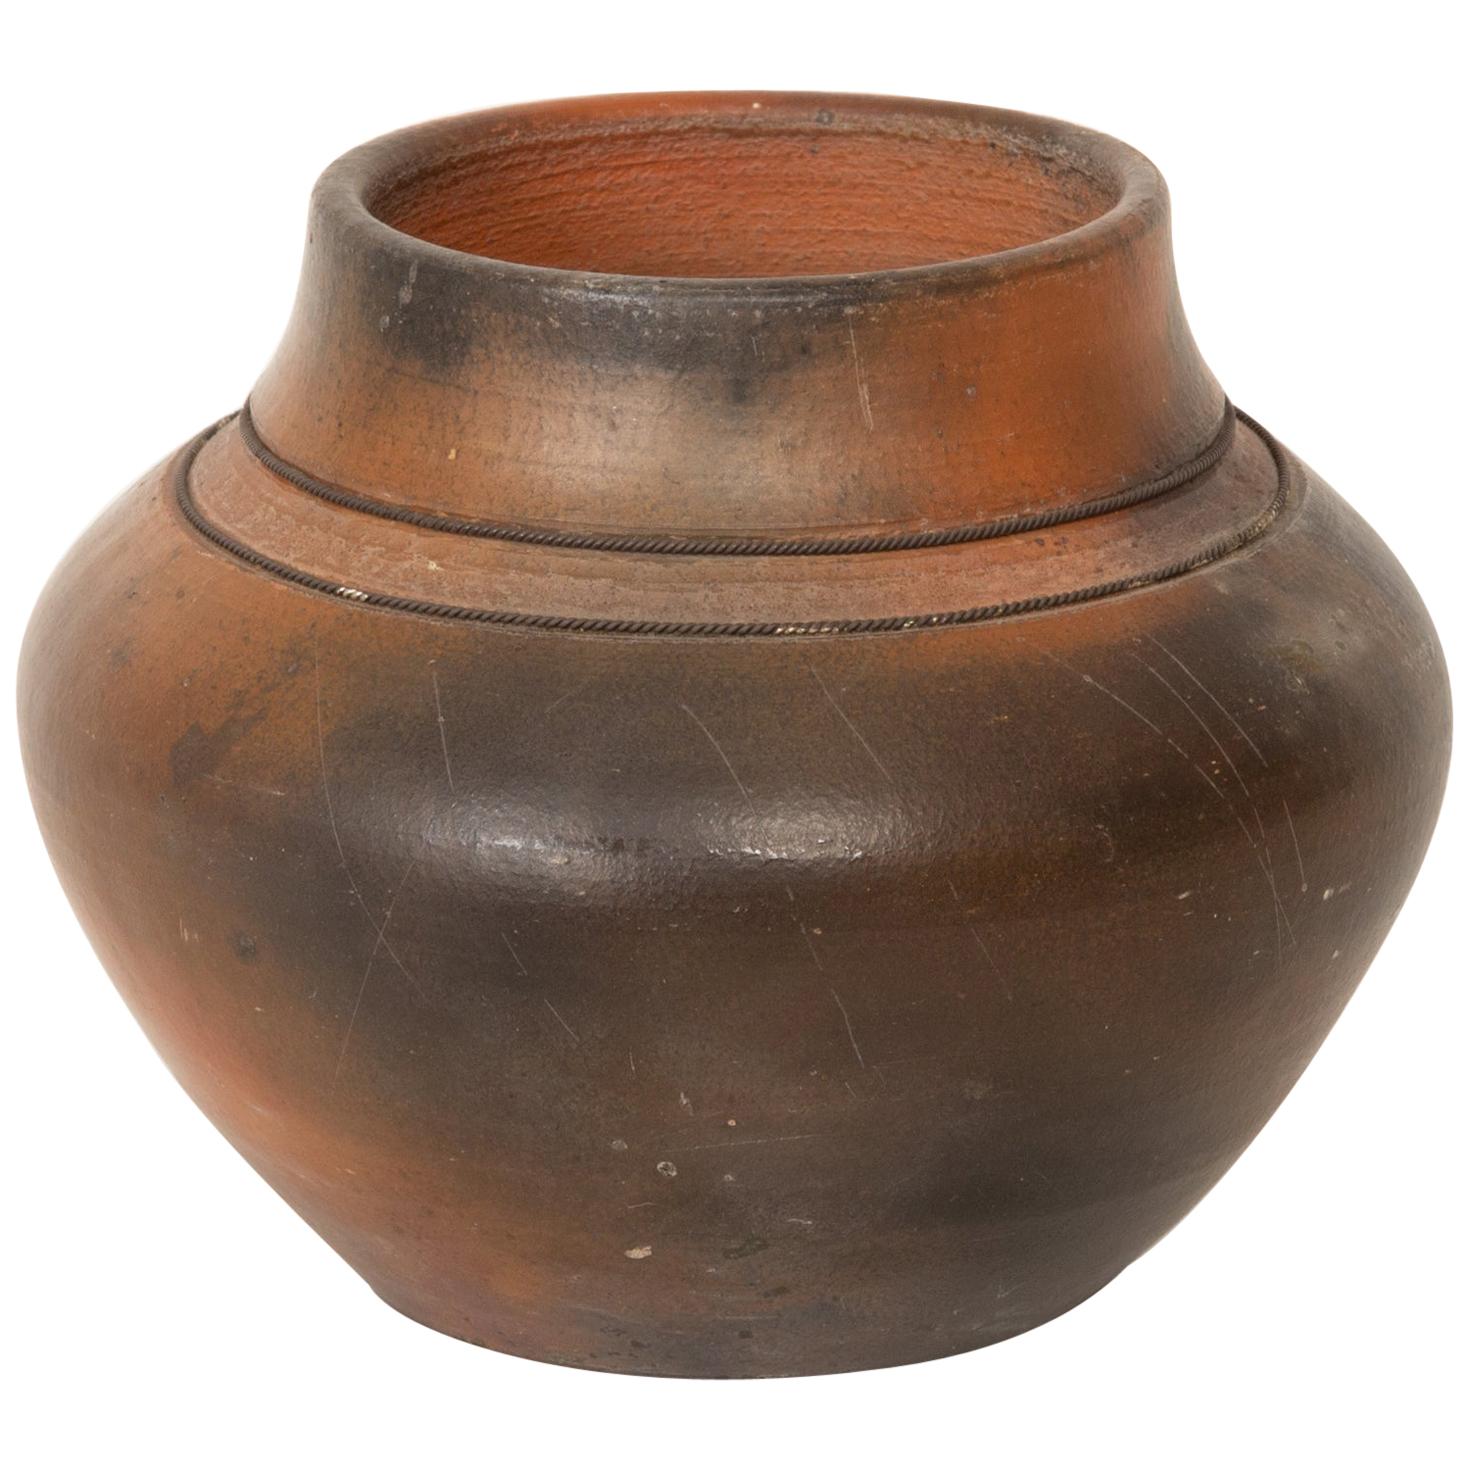 Studio Ceramic Vase with Raku Glaze